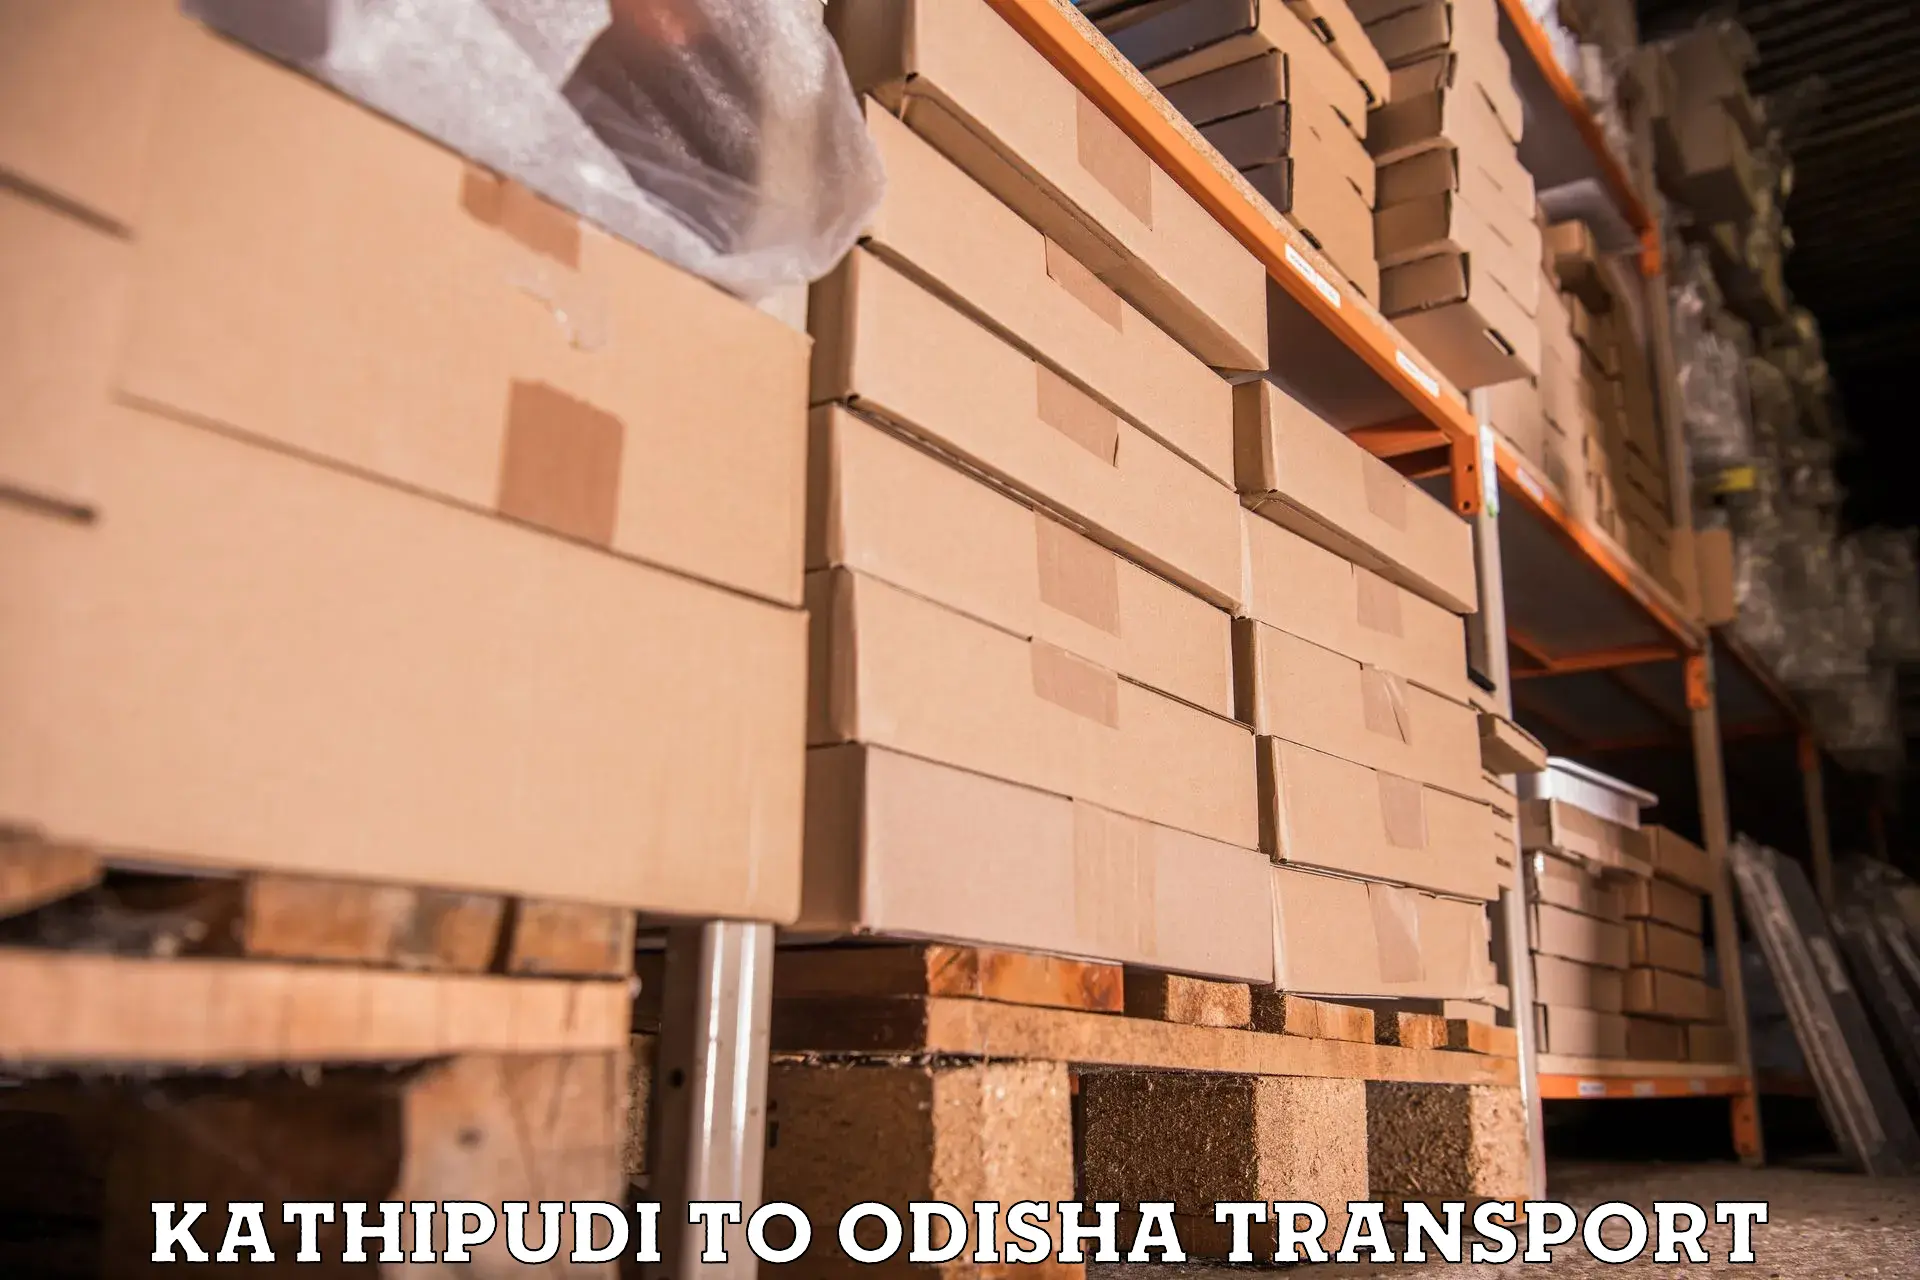 Two wheeler transport services Kathipudi to Tihidi